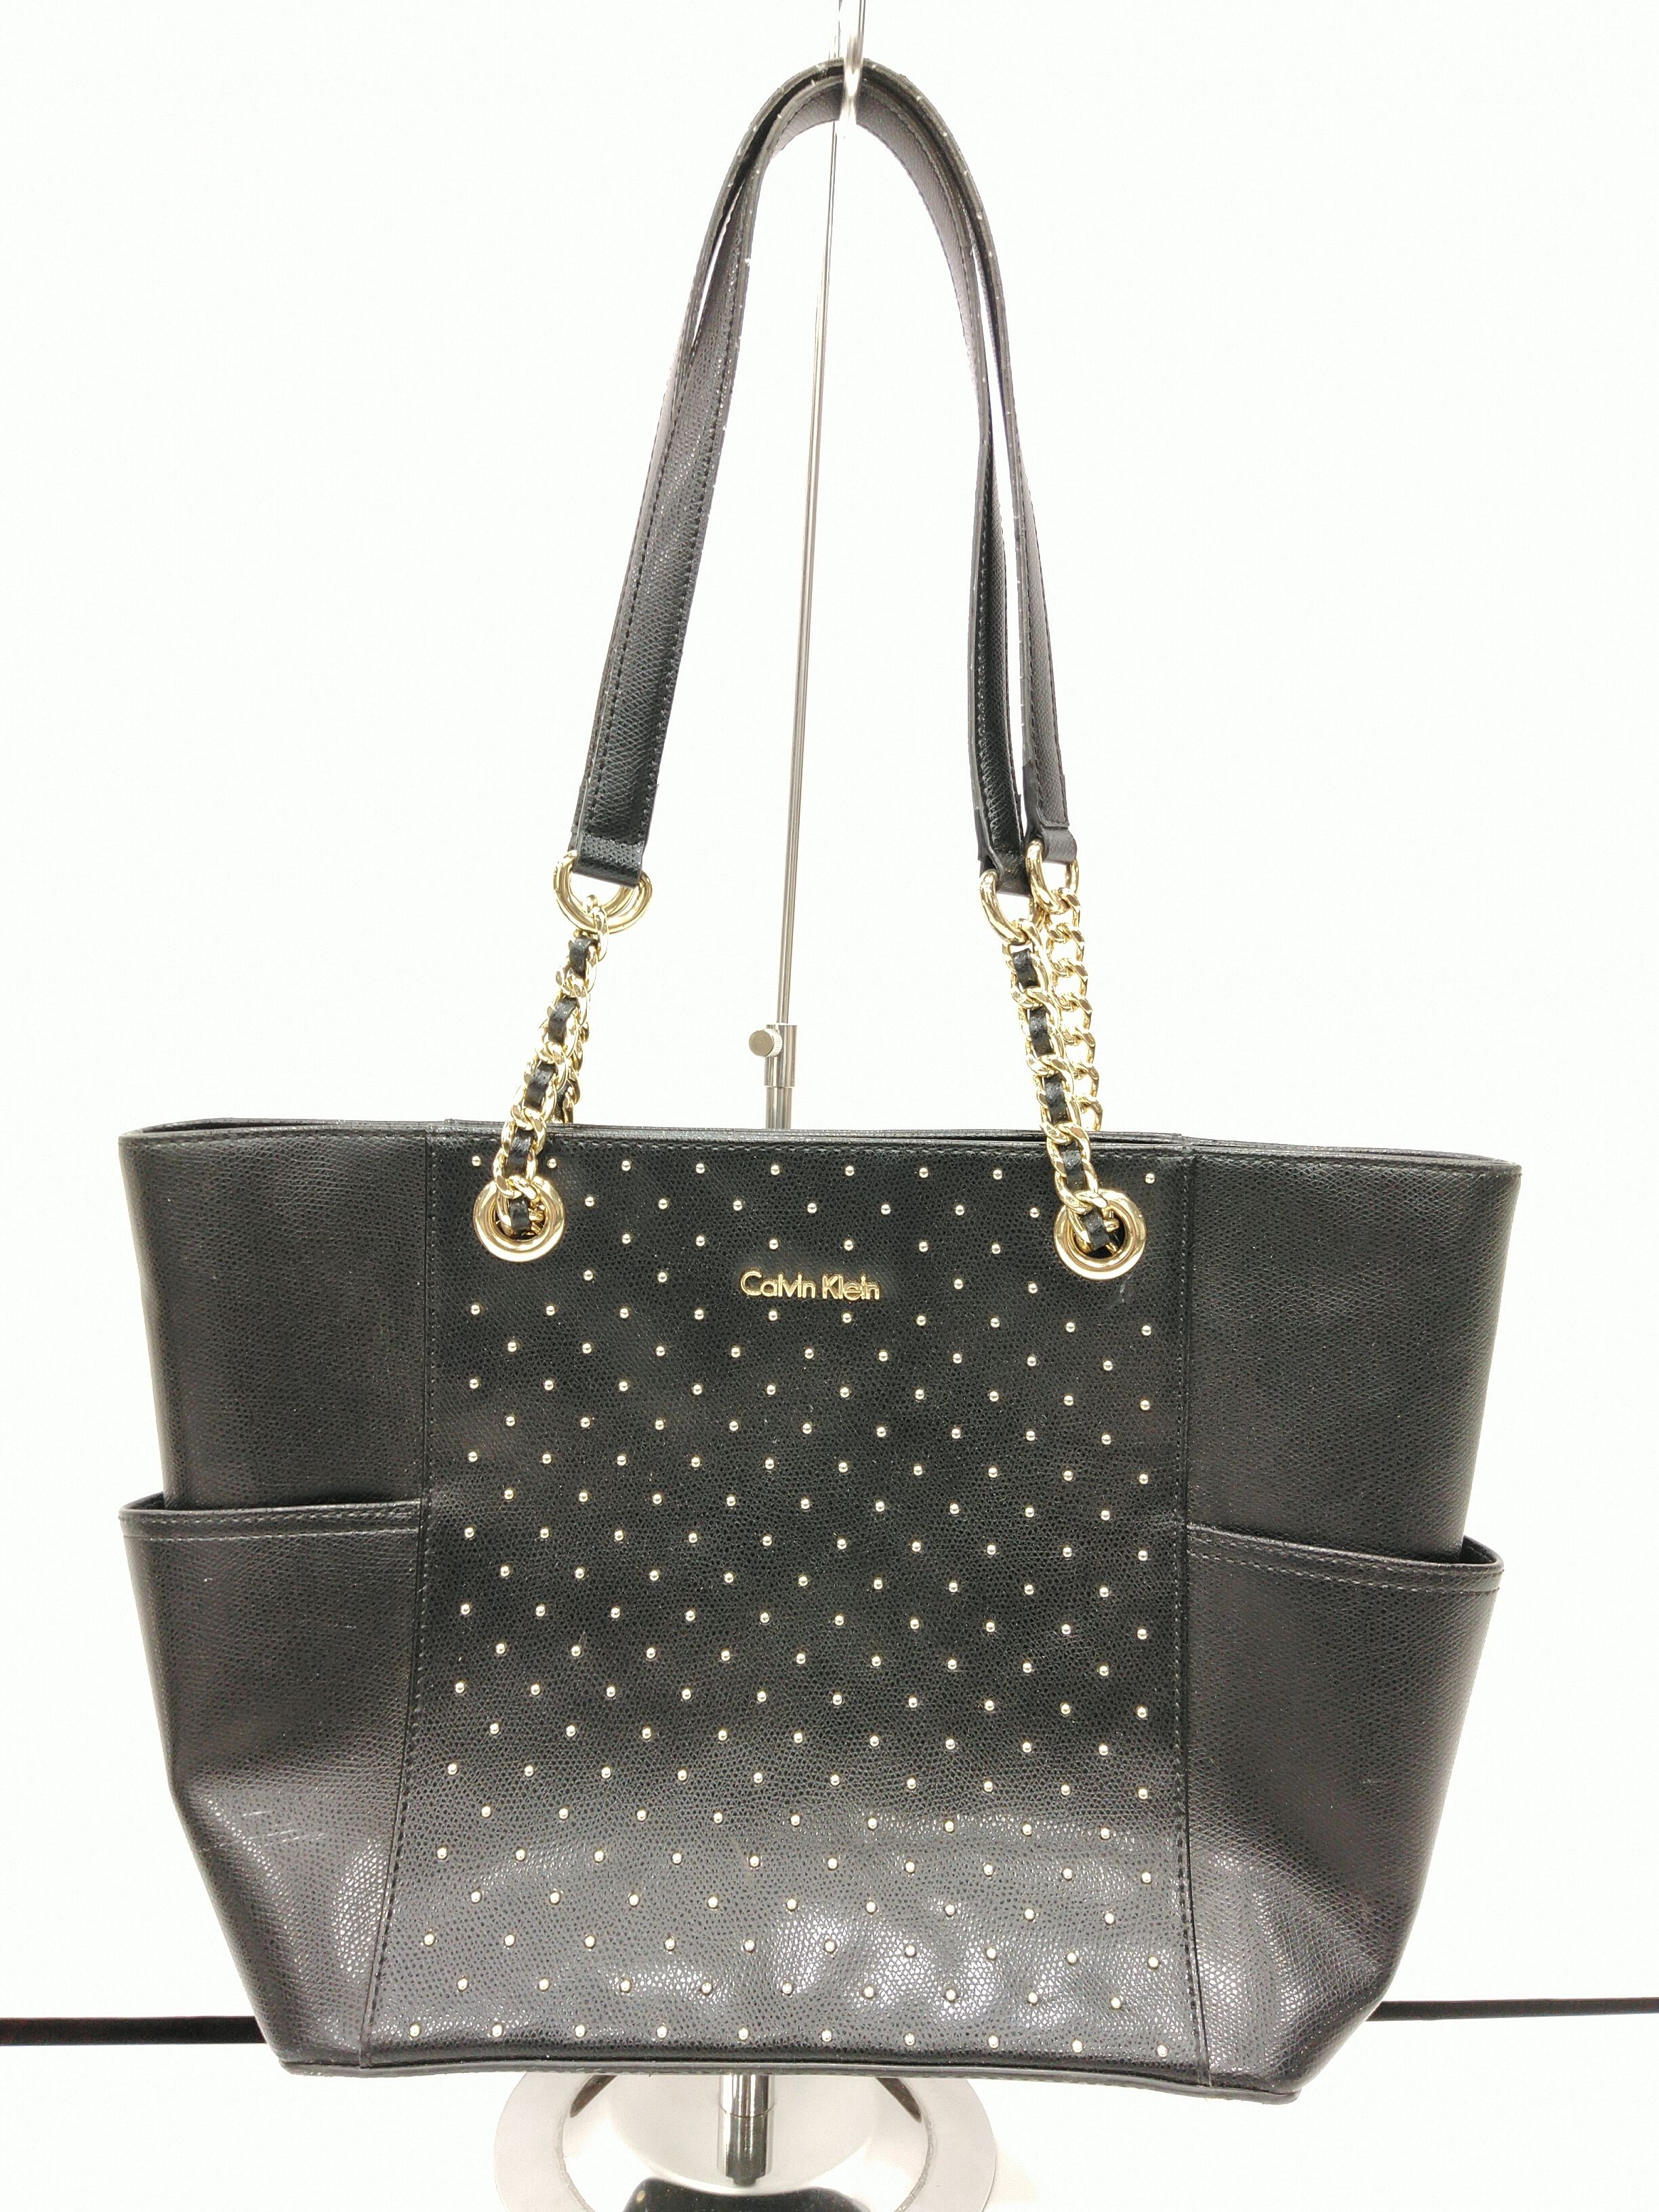 Calvin Klein Purse Tote Handbag Yellow Gold Chain Handle 11w X 10.25 Tall X  5 Deep Ladies Bag - Etsy